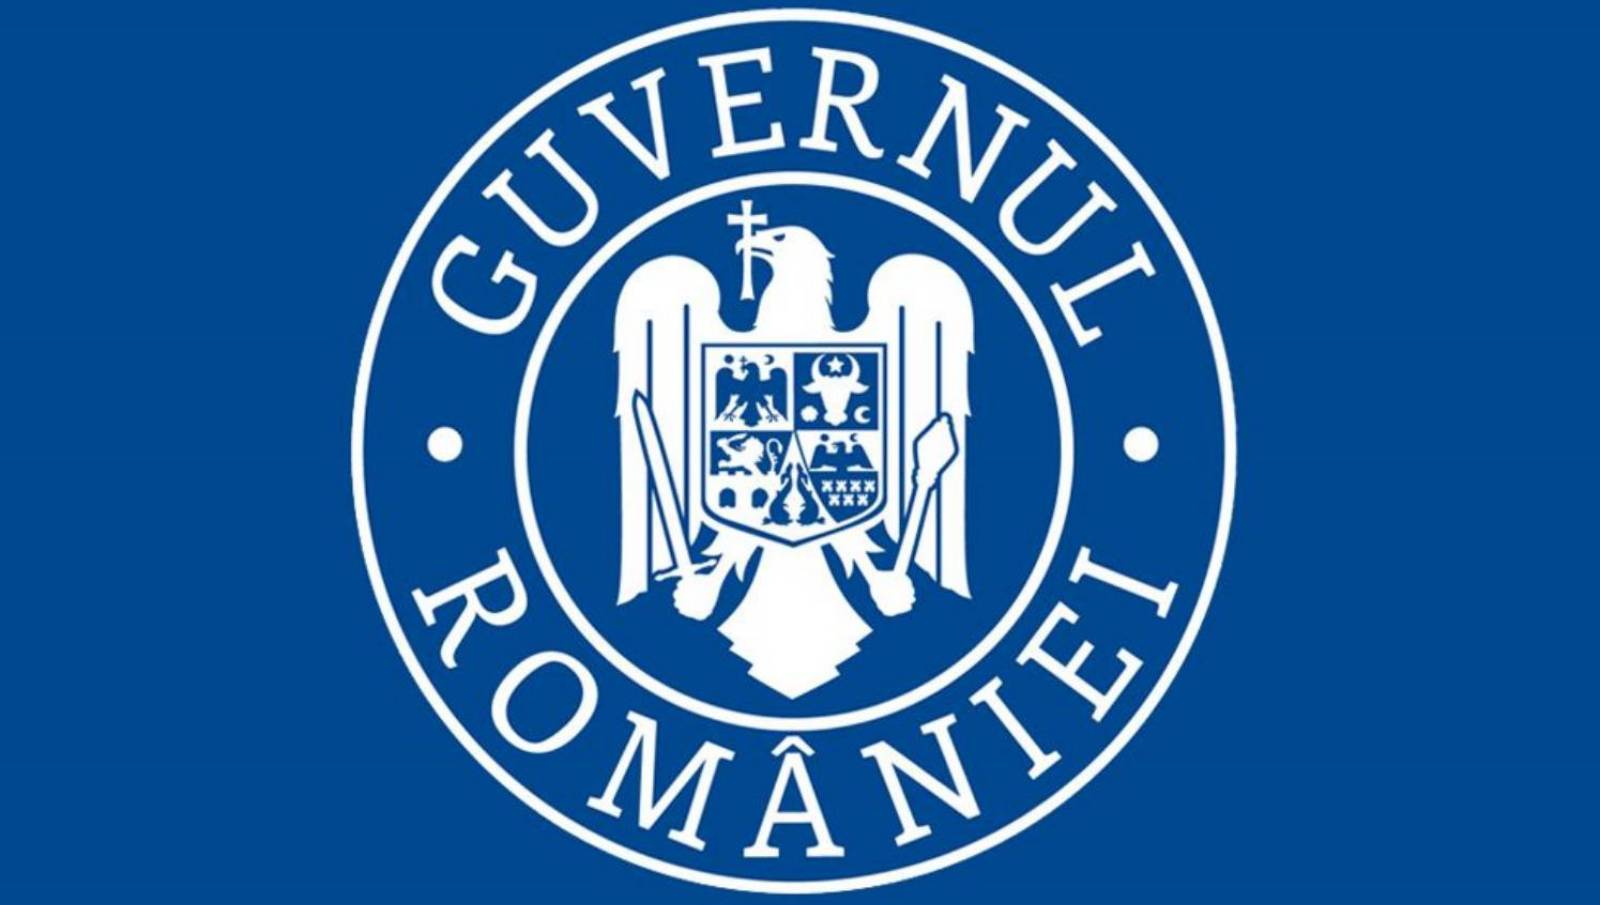 Ziekteverlof van de Roemeense overheid